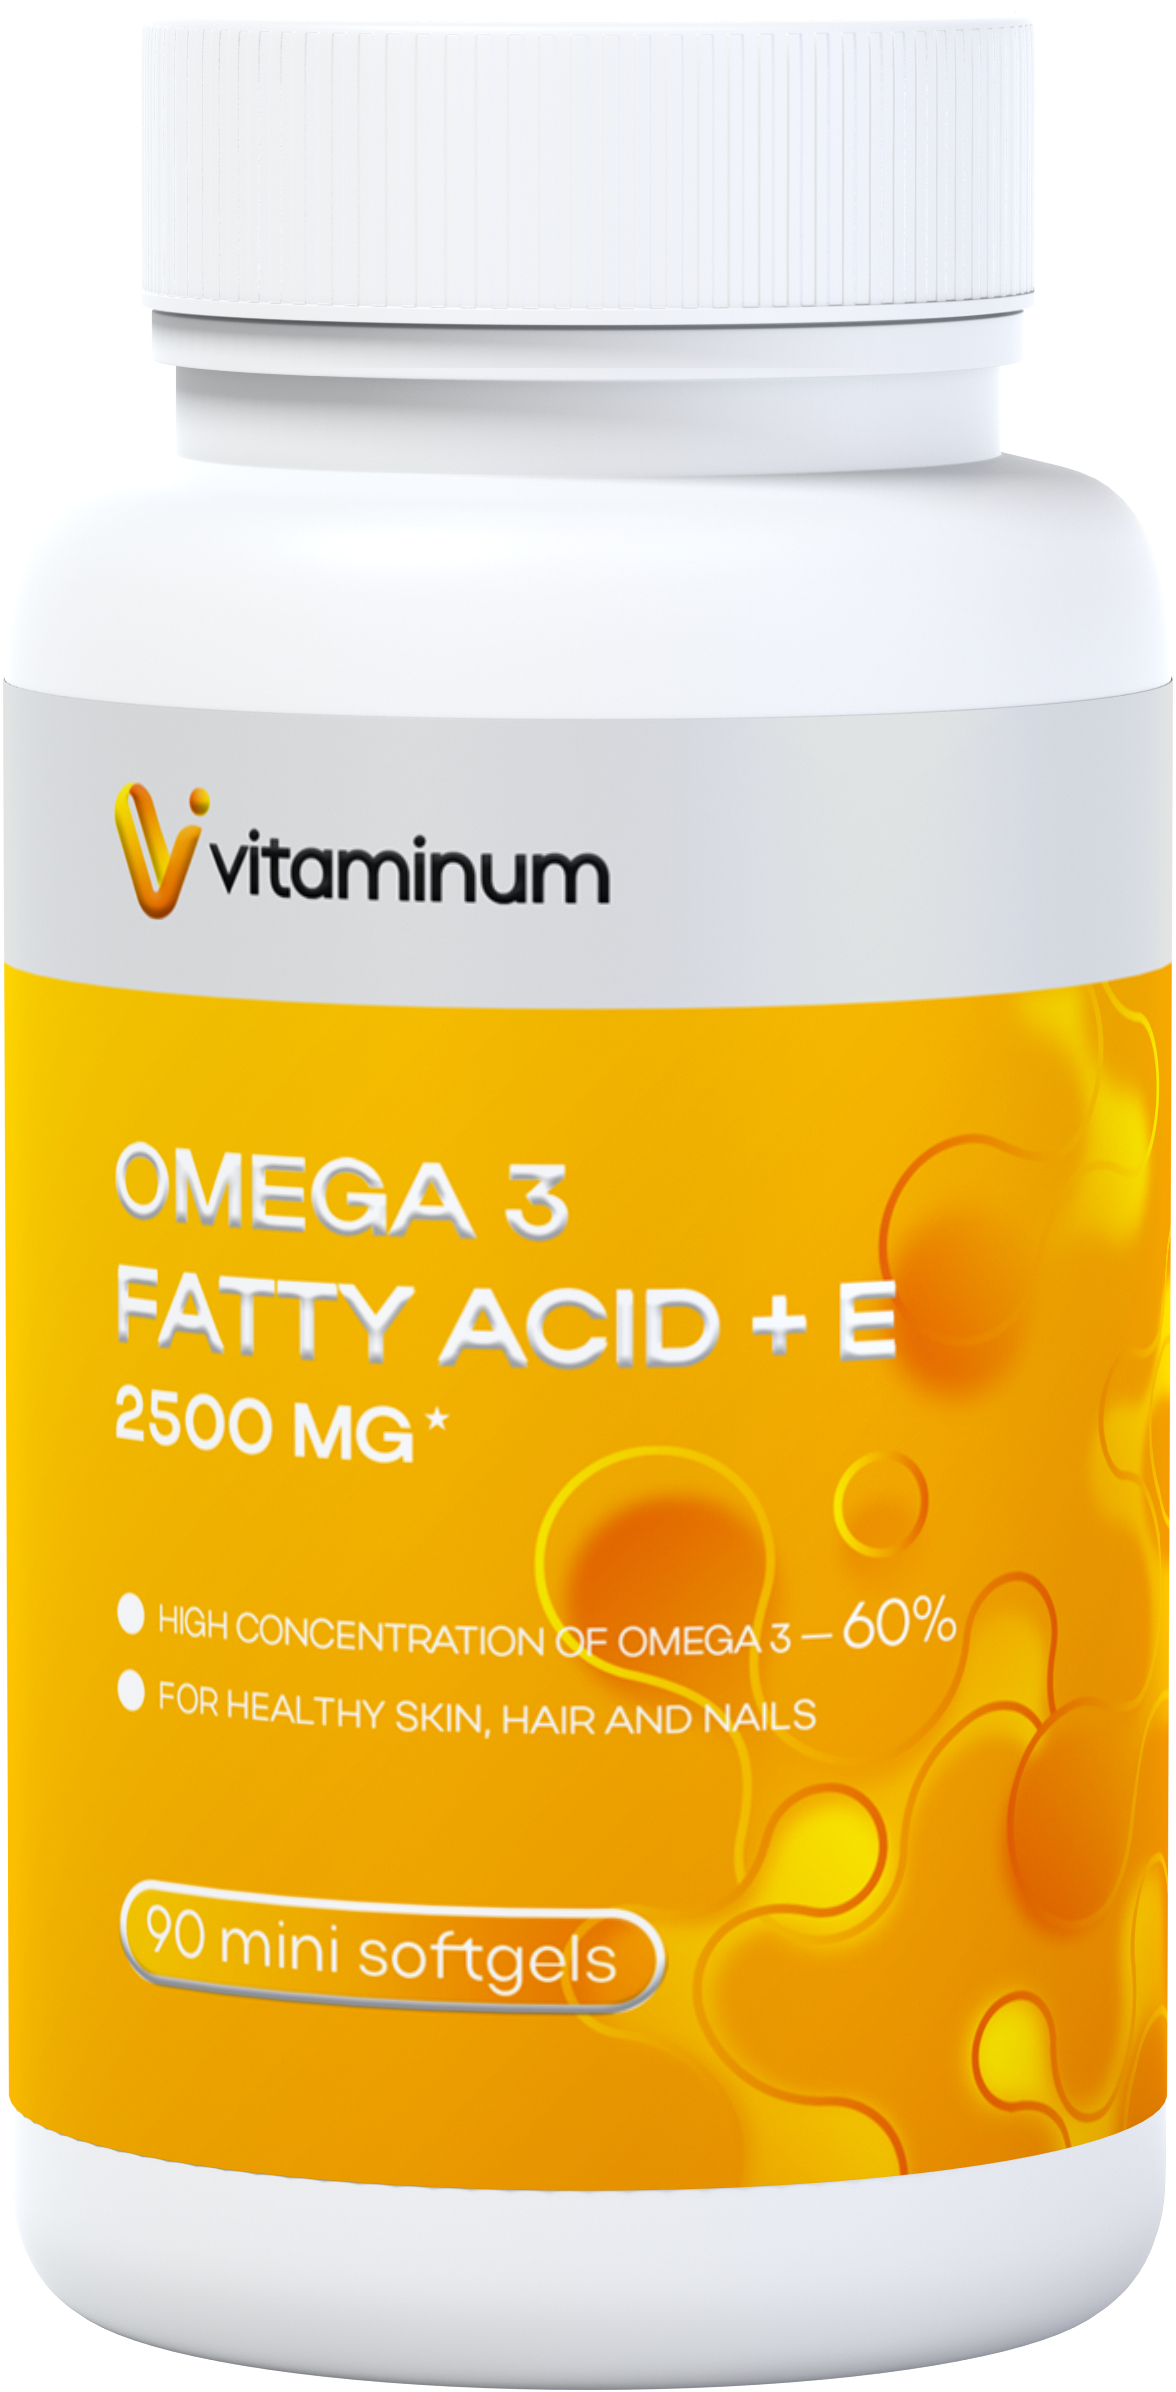  Vitaminum ОМЕГА 3 60% + витамин Е (2500 MG*) 90 капсул 700 мг  в Зеленогорске